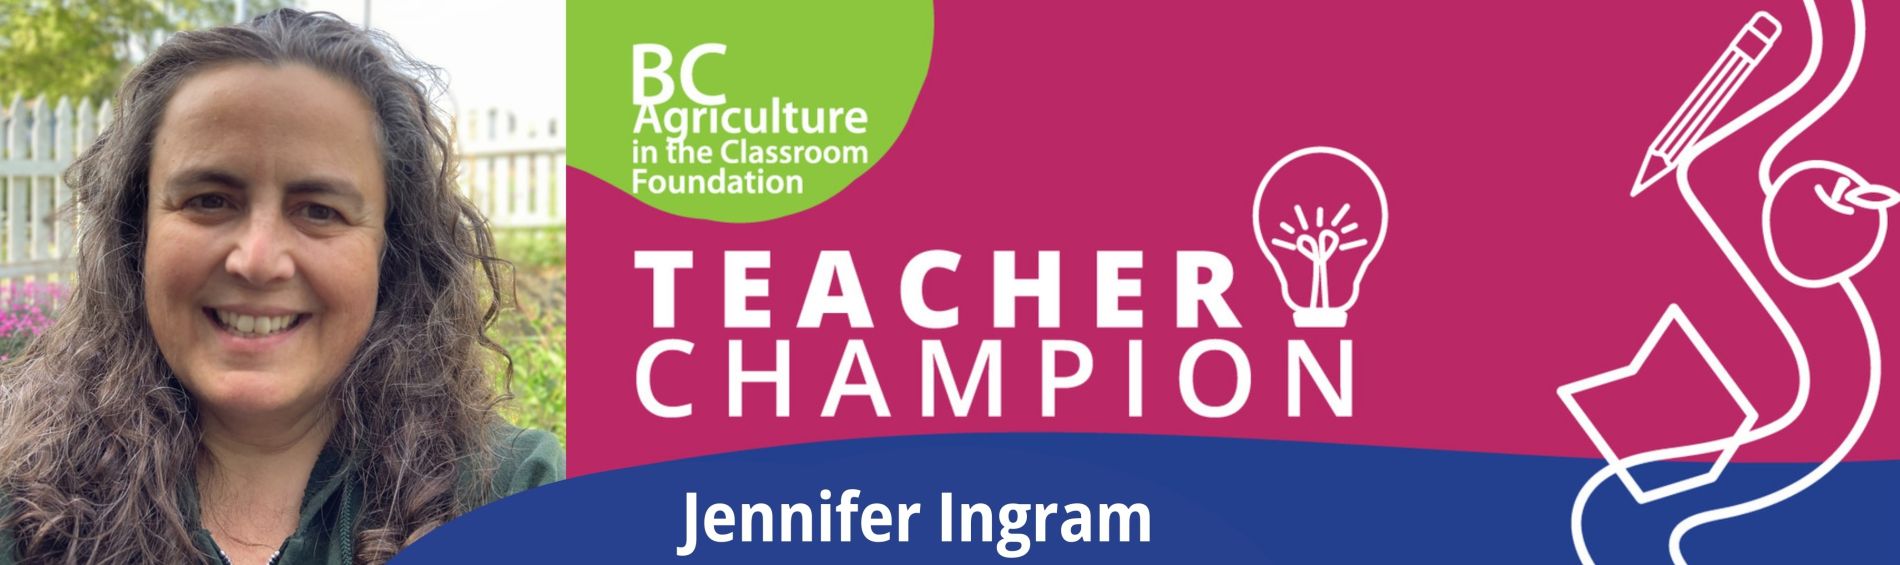 Teacher Champion - Jennifer Ingram